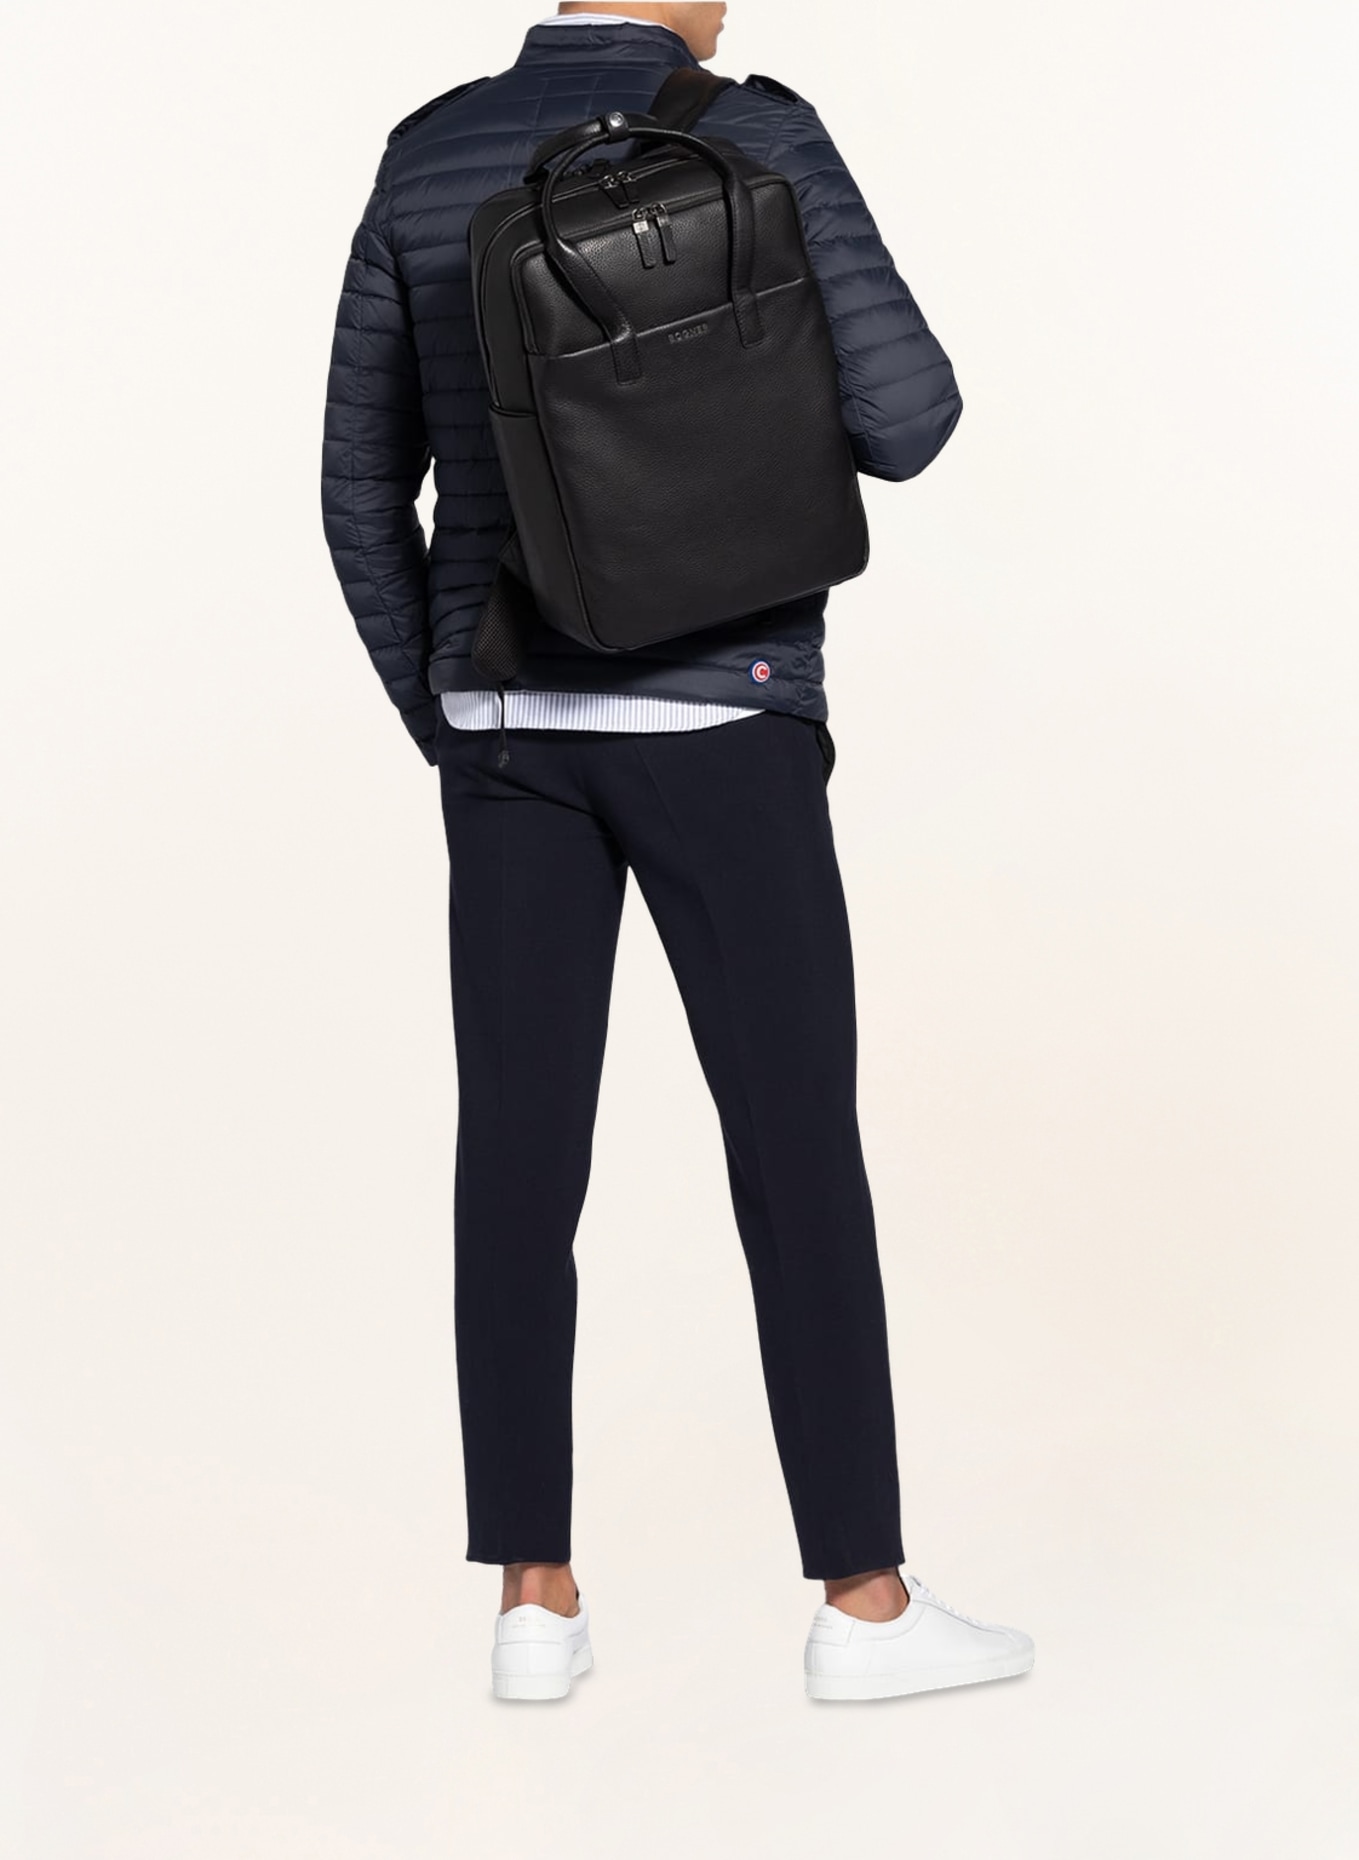 BOGNER Backpack, Color: BLACK (Image 4)